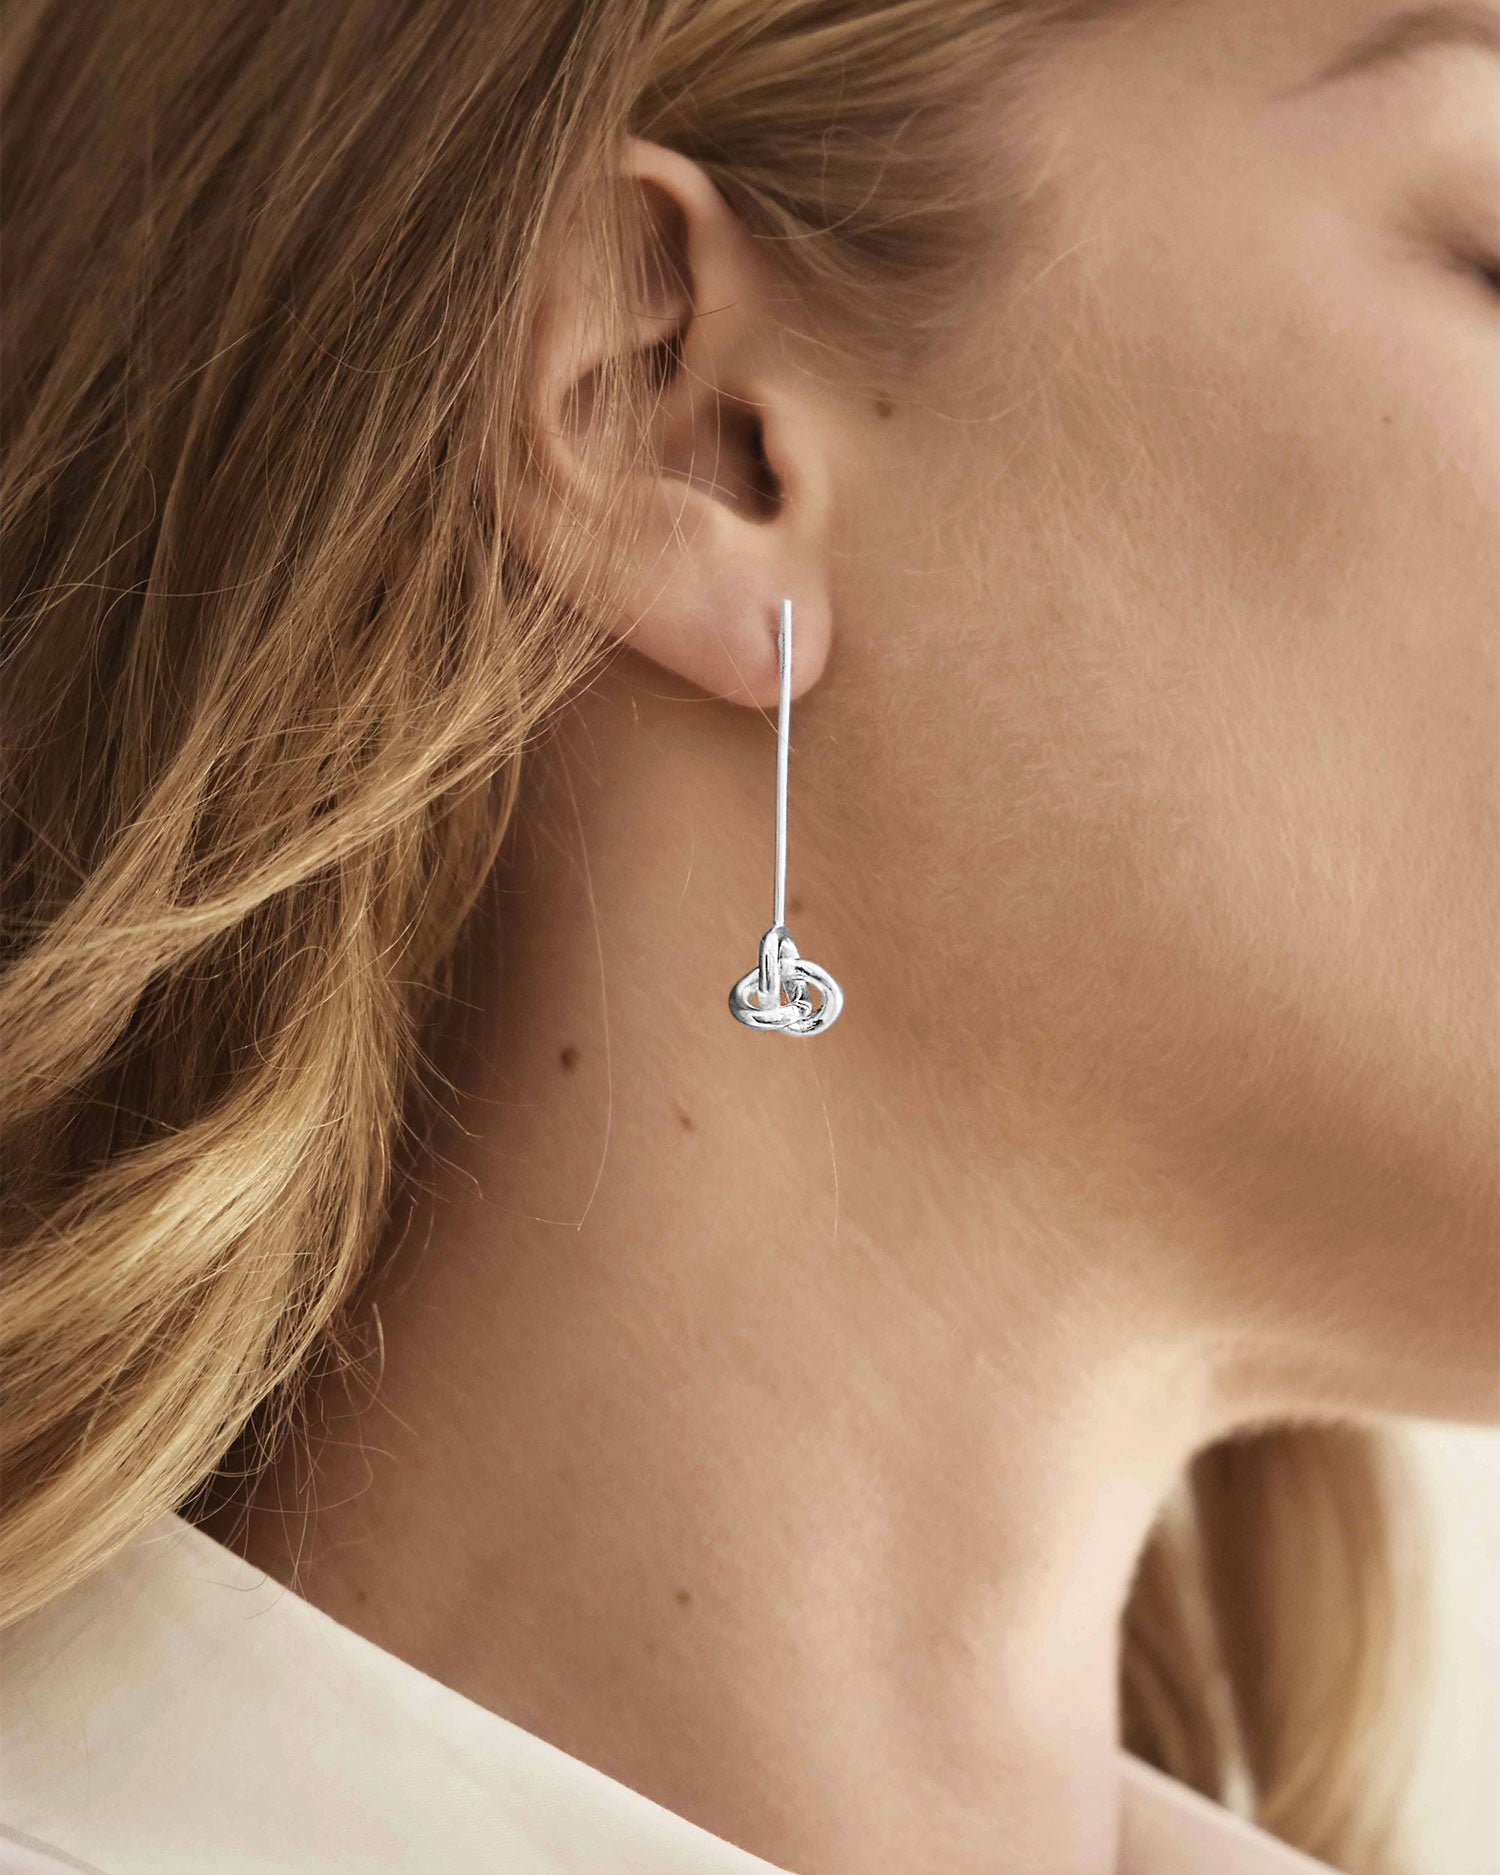 Le Knot earrings silver